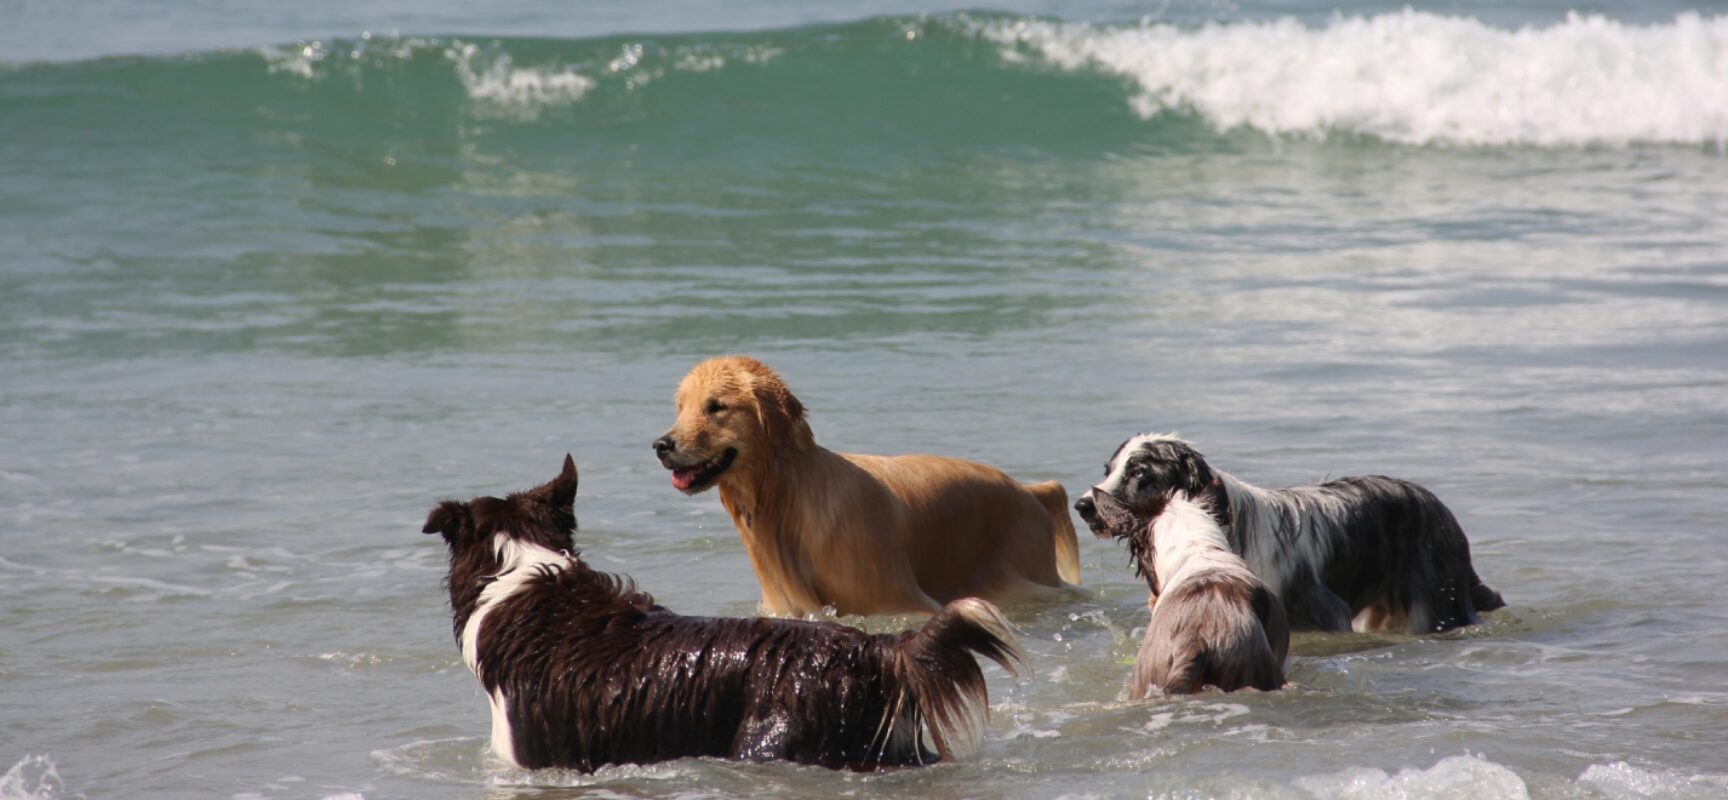 Começa a valer em Santos lei que permite cachorros na praia